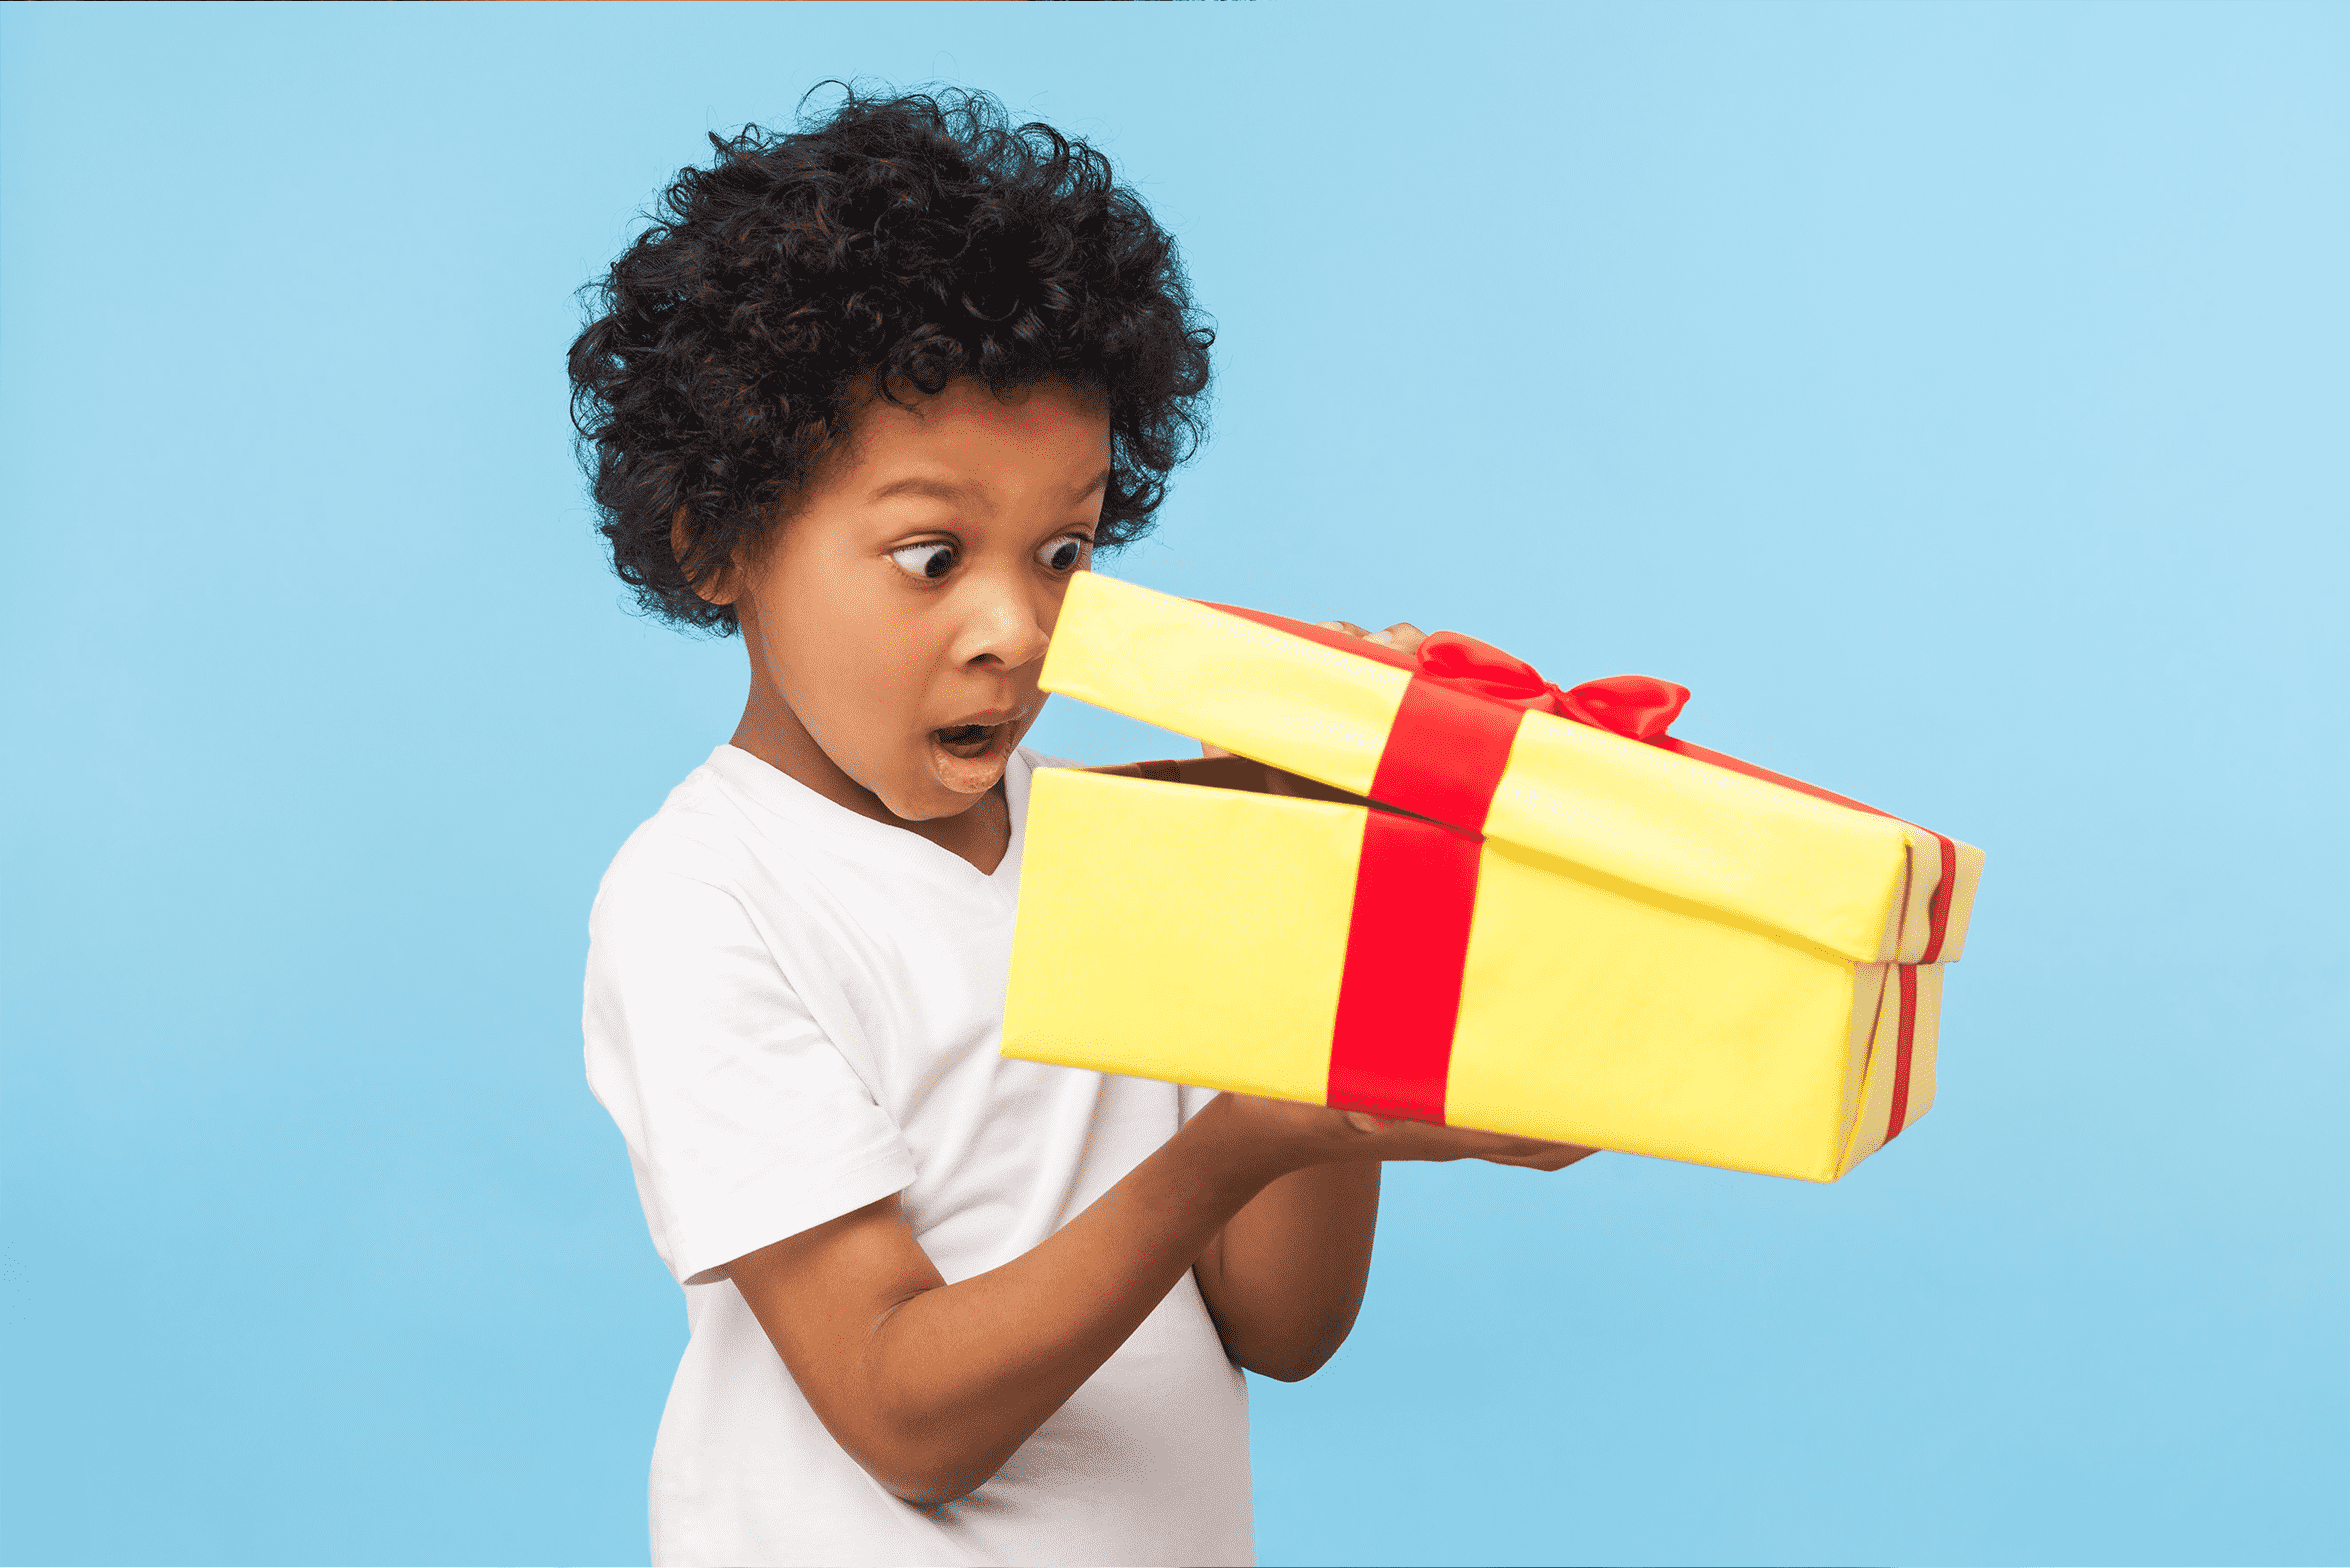  Presentes de Natal para crianças: veja dicas baratas e educativas! 